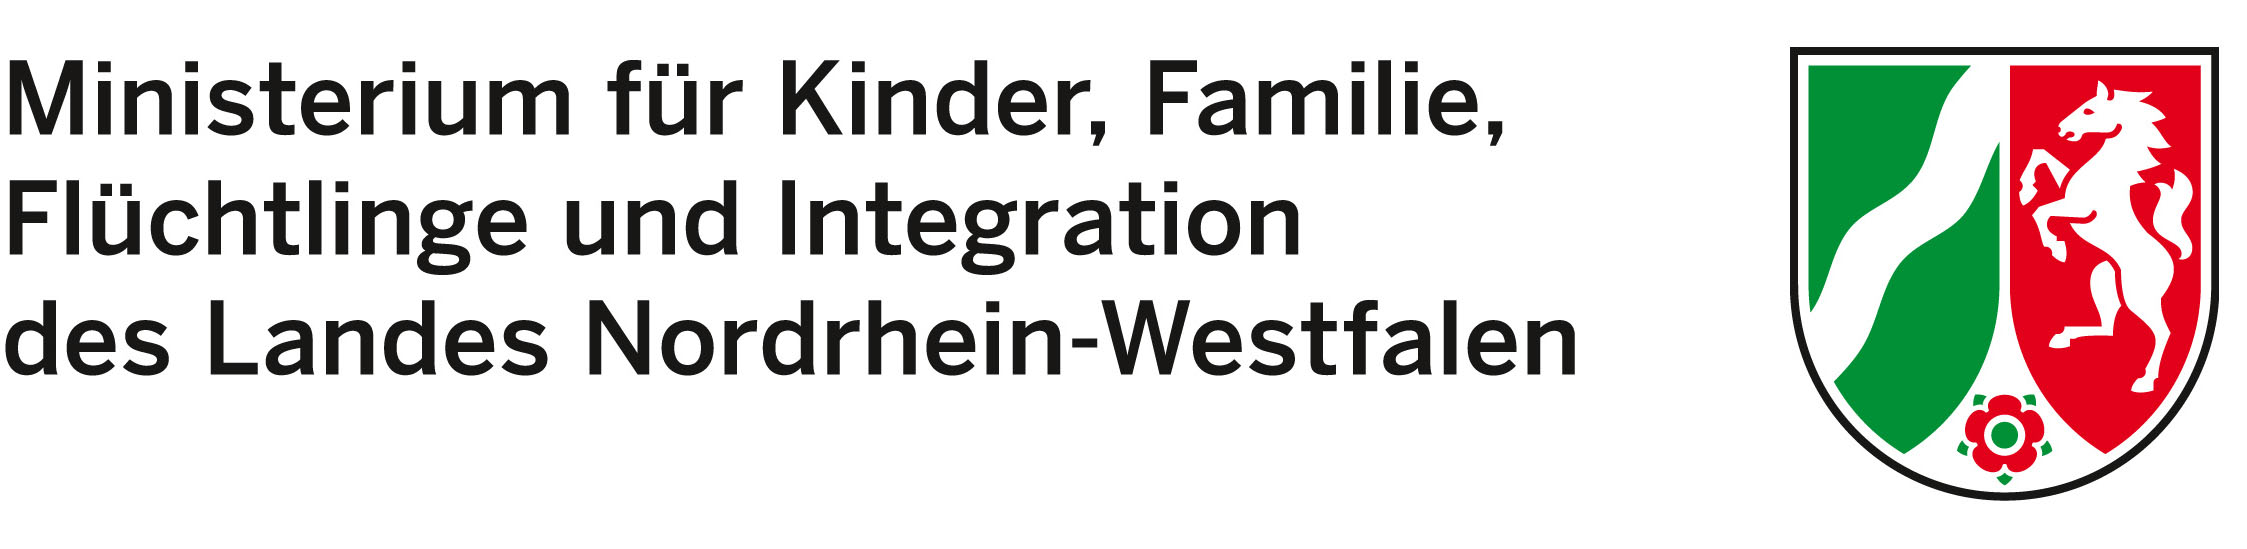 AWO Mittelrhein – Fachdienste Migration und Integration – Migrations- und Fluechtlingsberatung - Ministerium für Kinder Familie Flüchtlinge und Integration des Landes NRW Logo